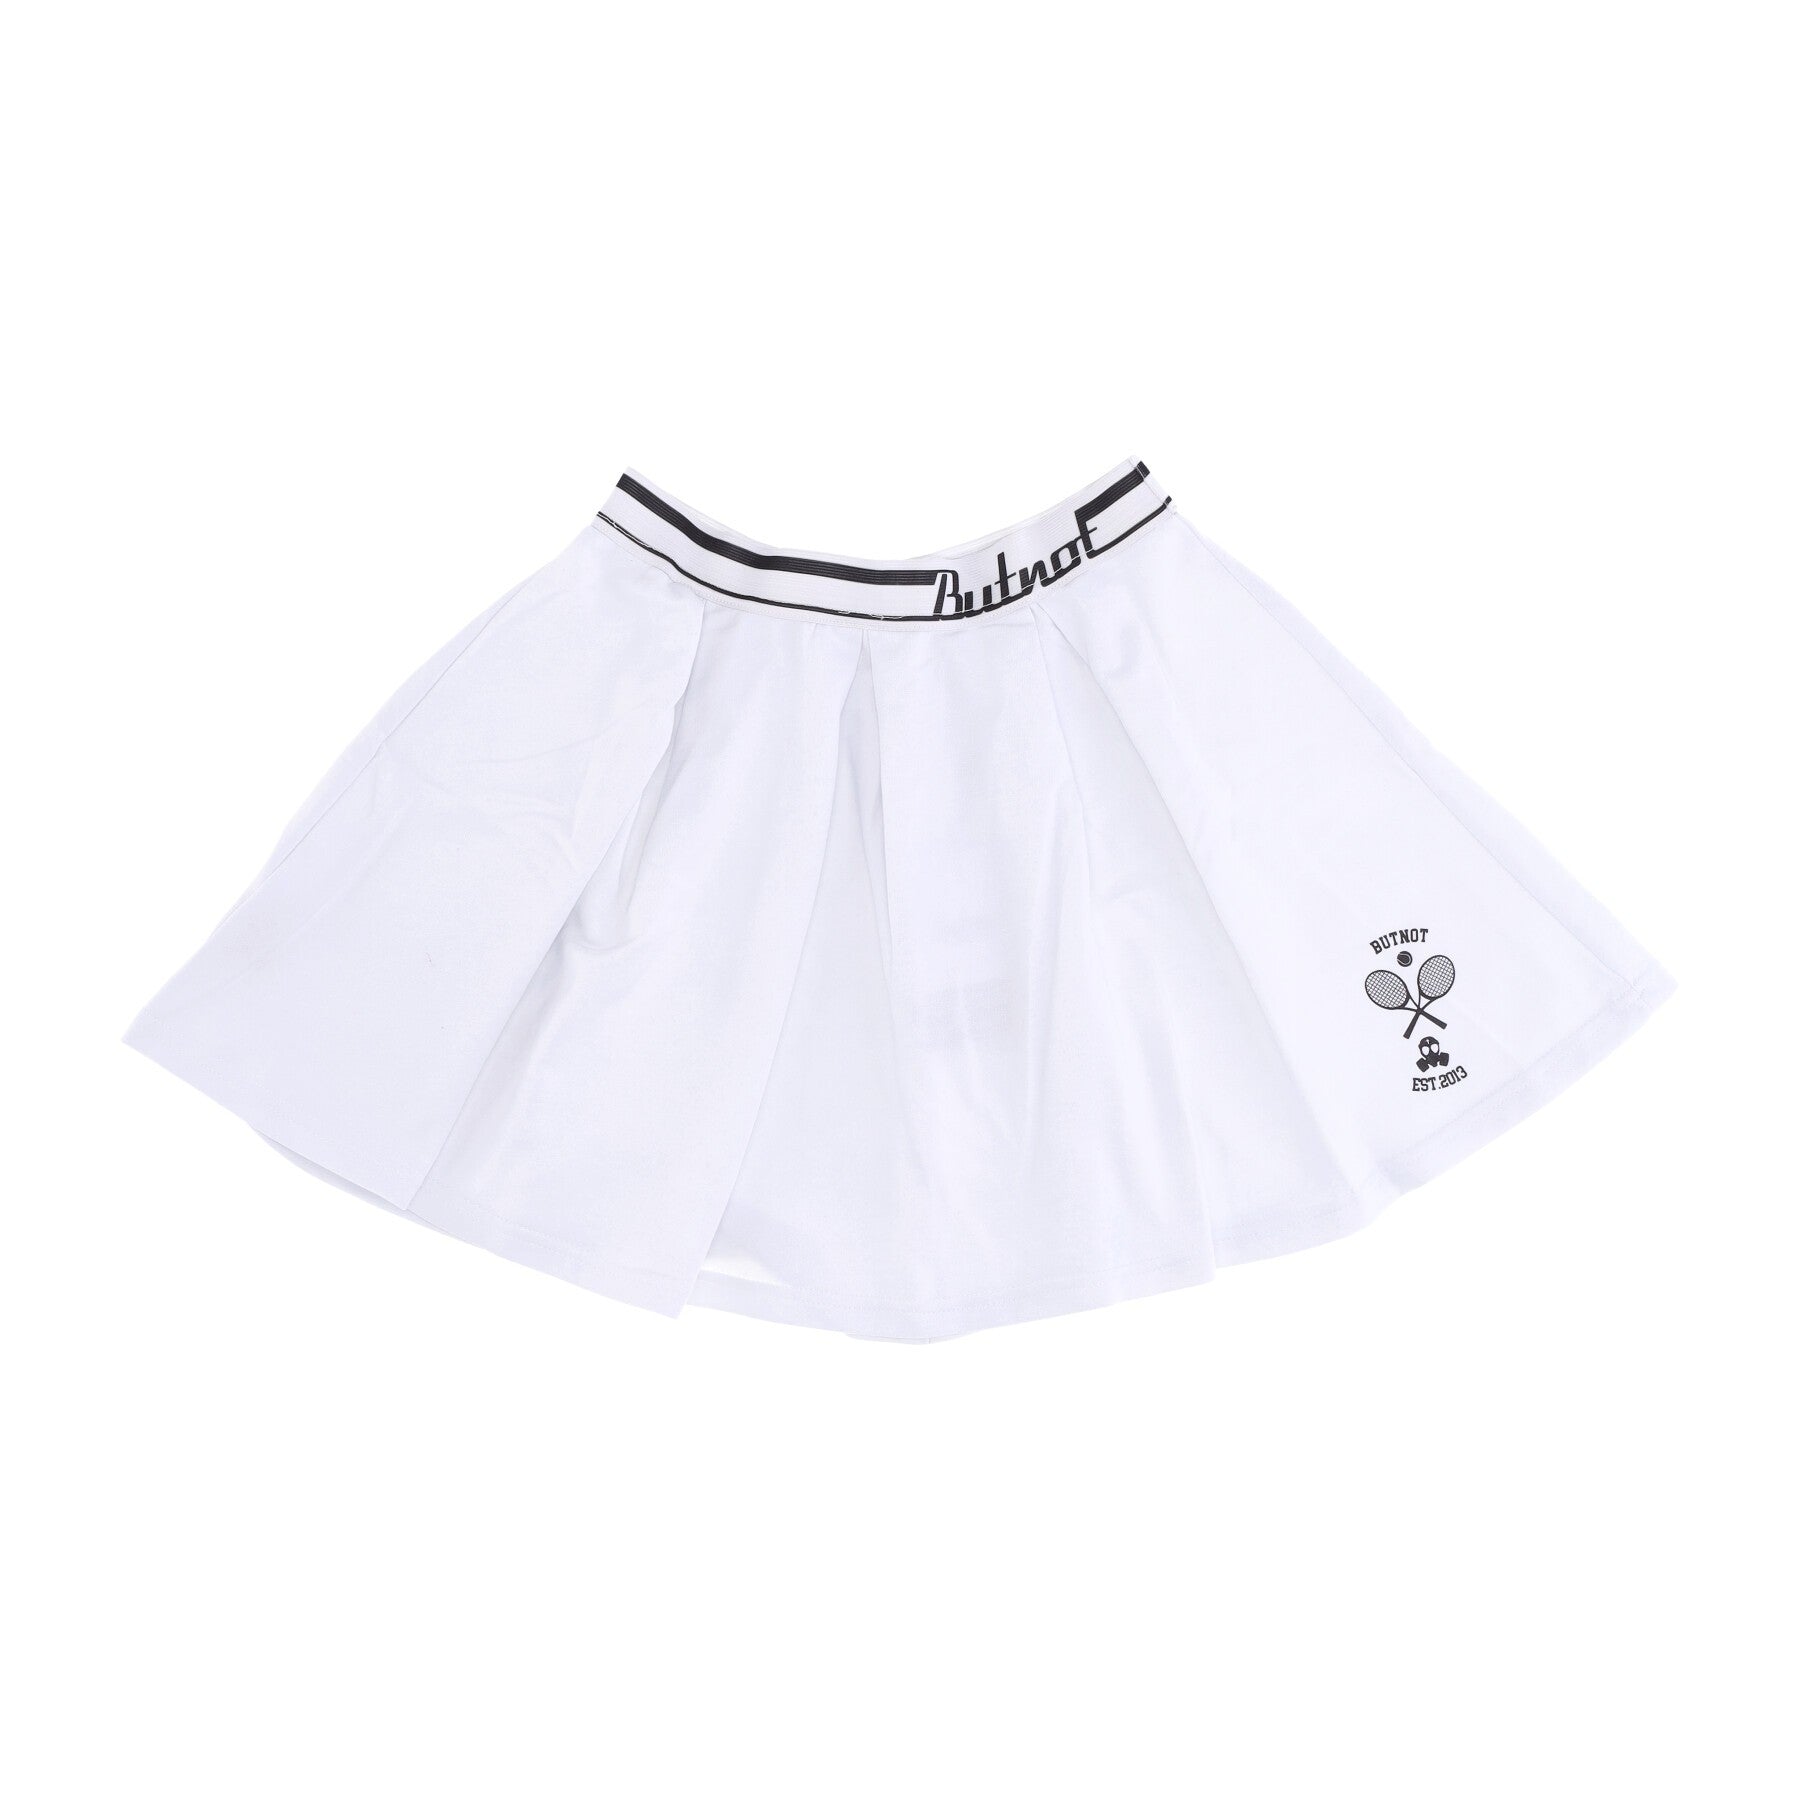 Short Skirt Women's Tennis Skirt